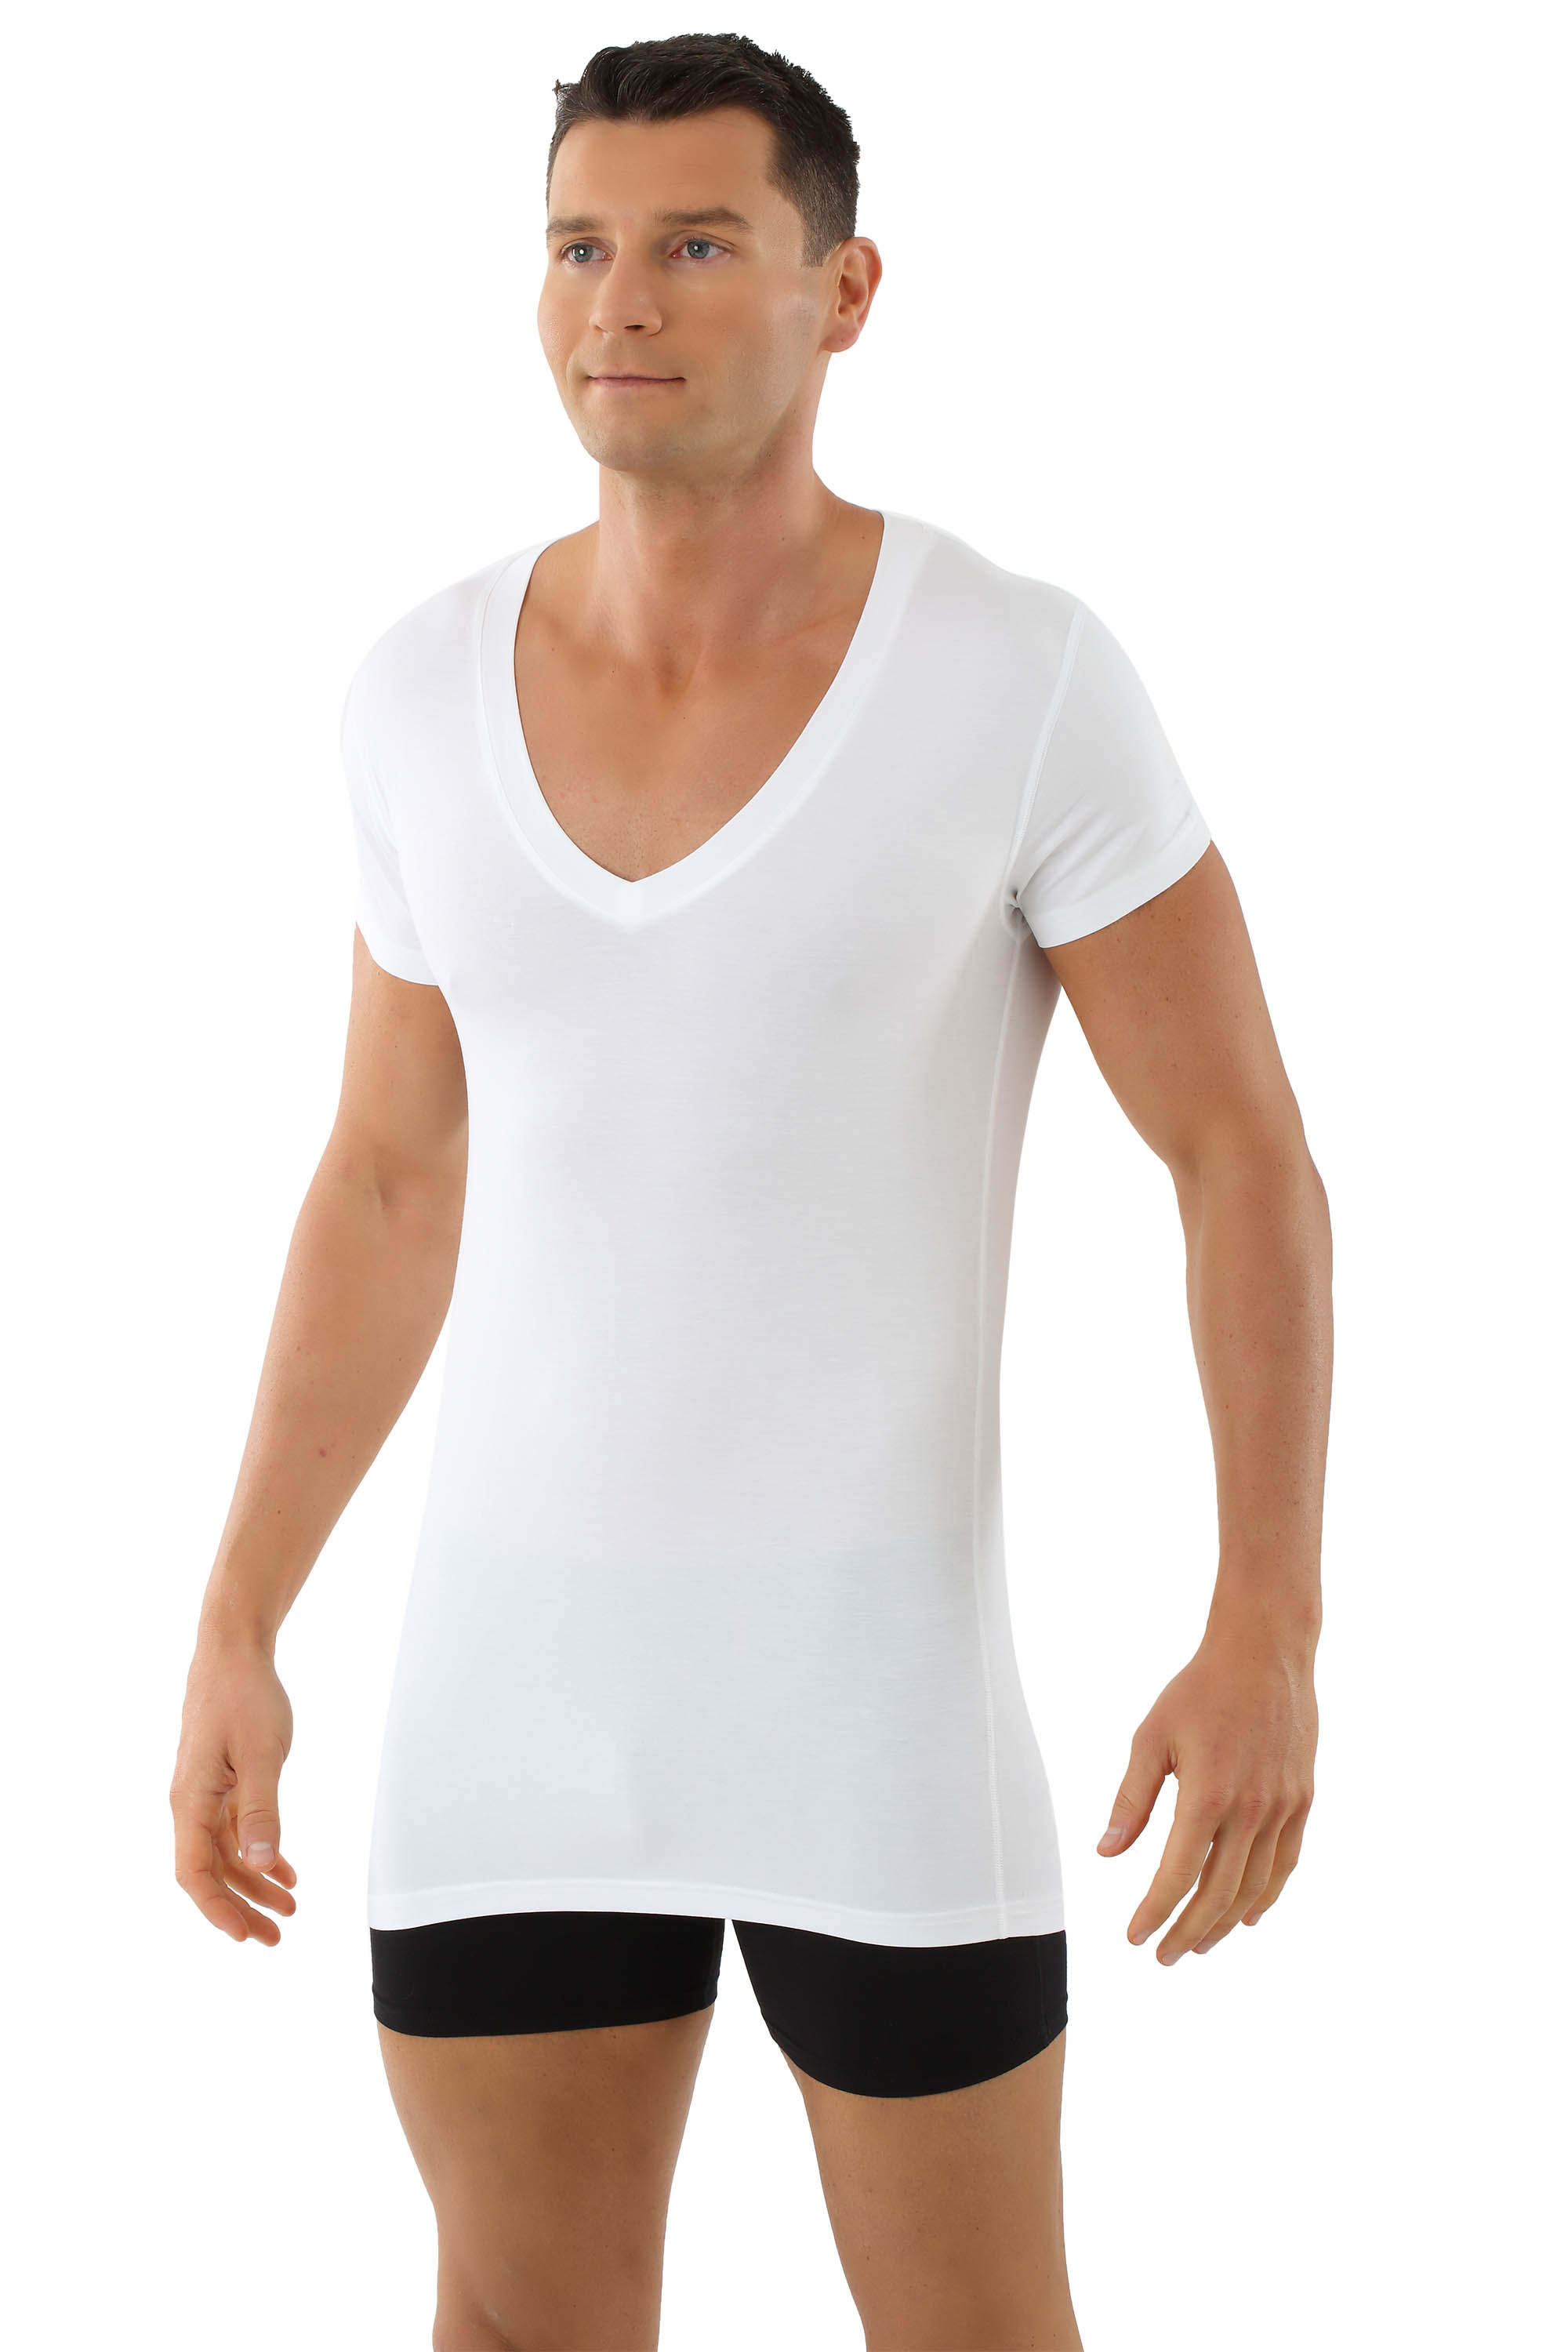 ALBERT KREUZ  Men's MicroModal deep v-neck undershirt Stuttgart light short  sleeves white